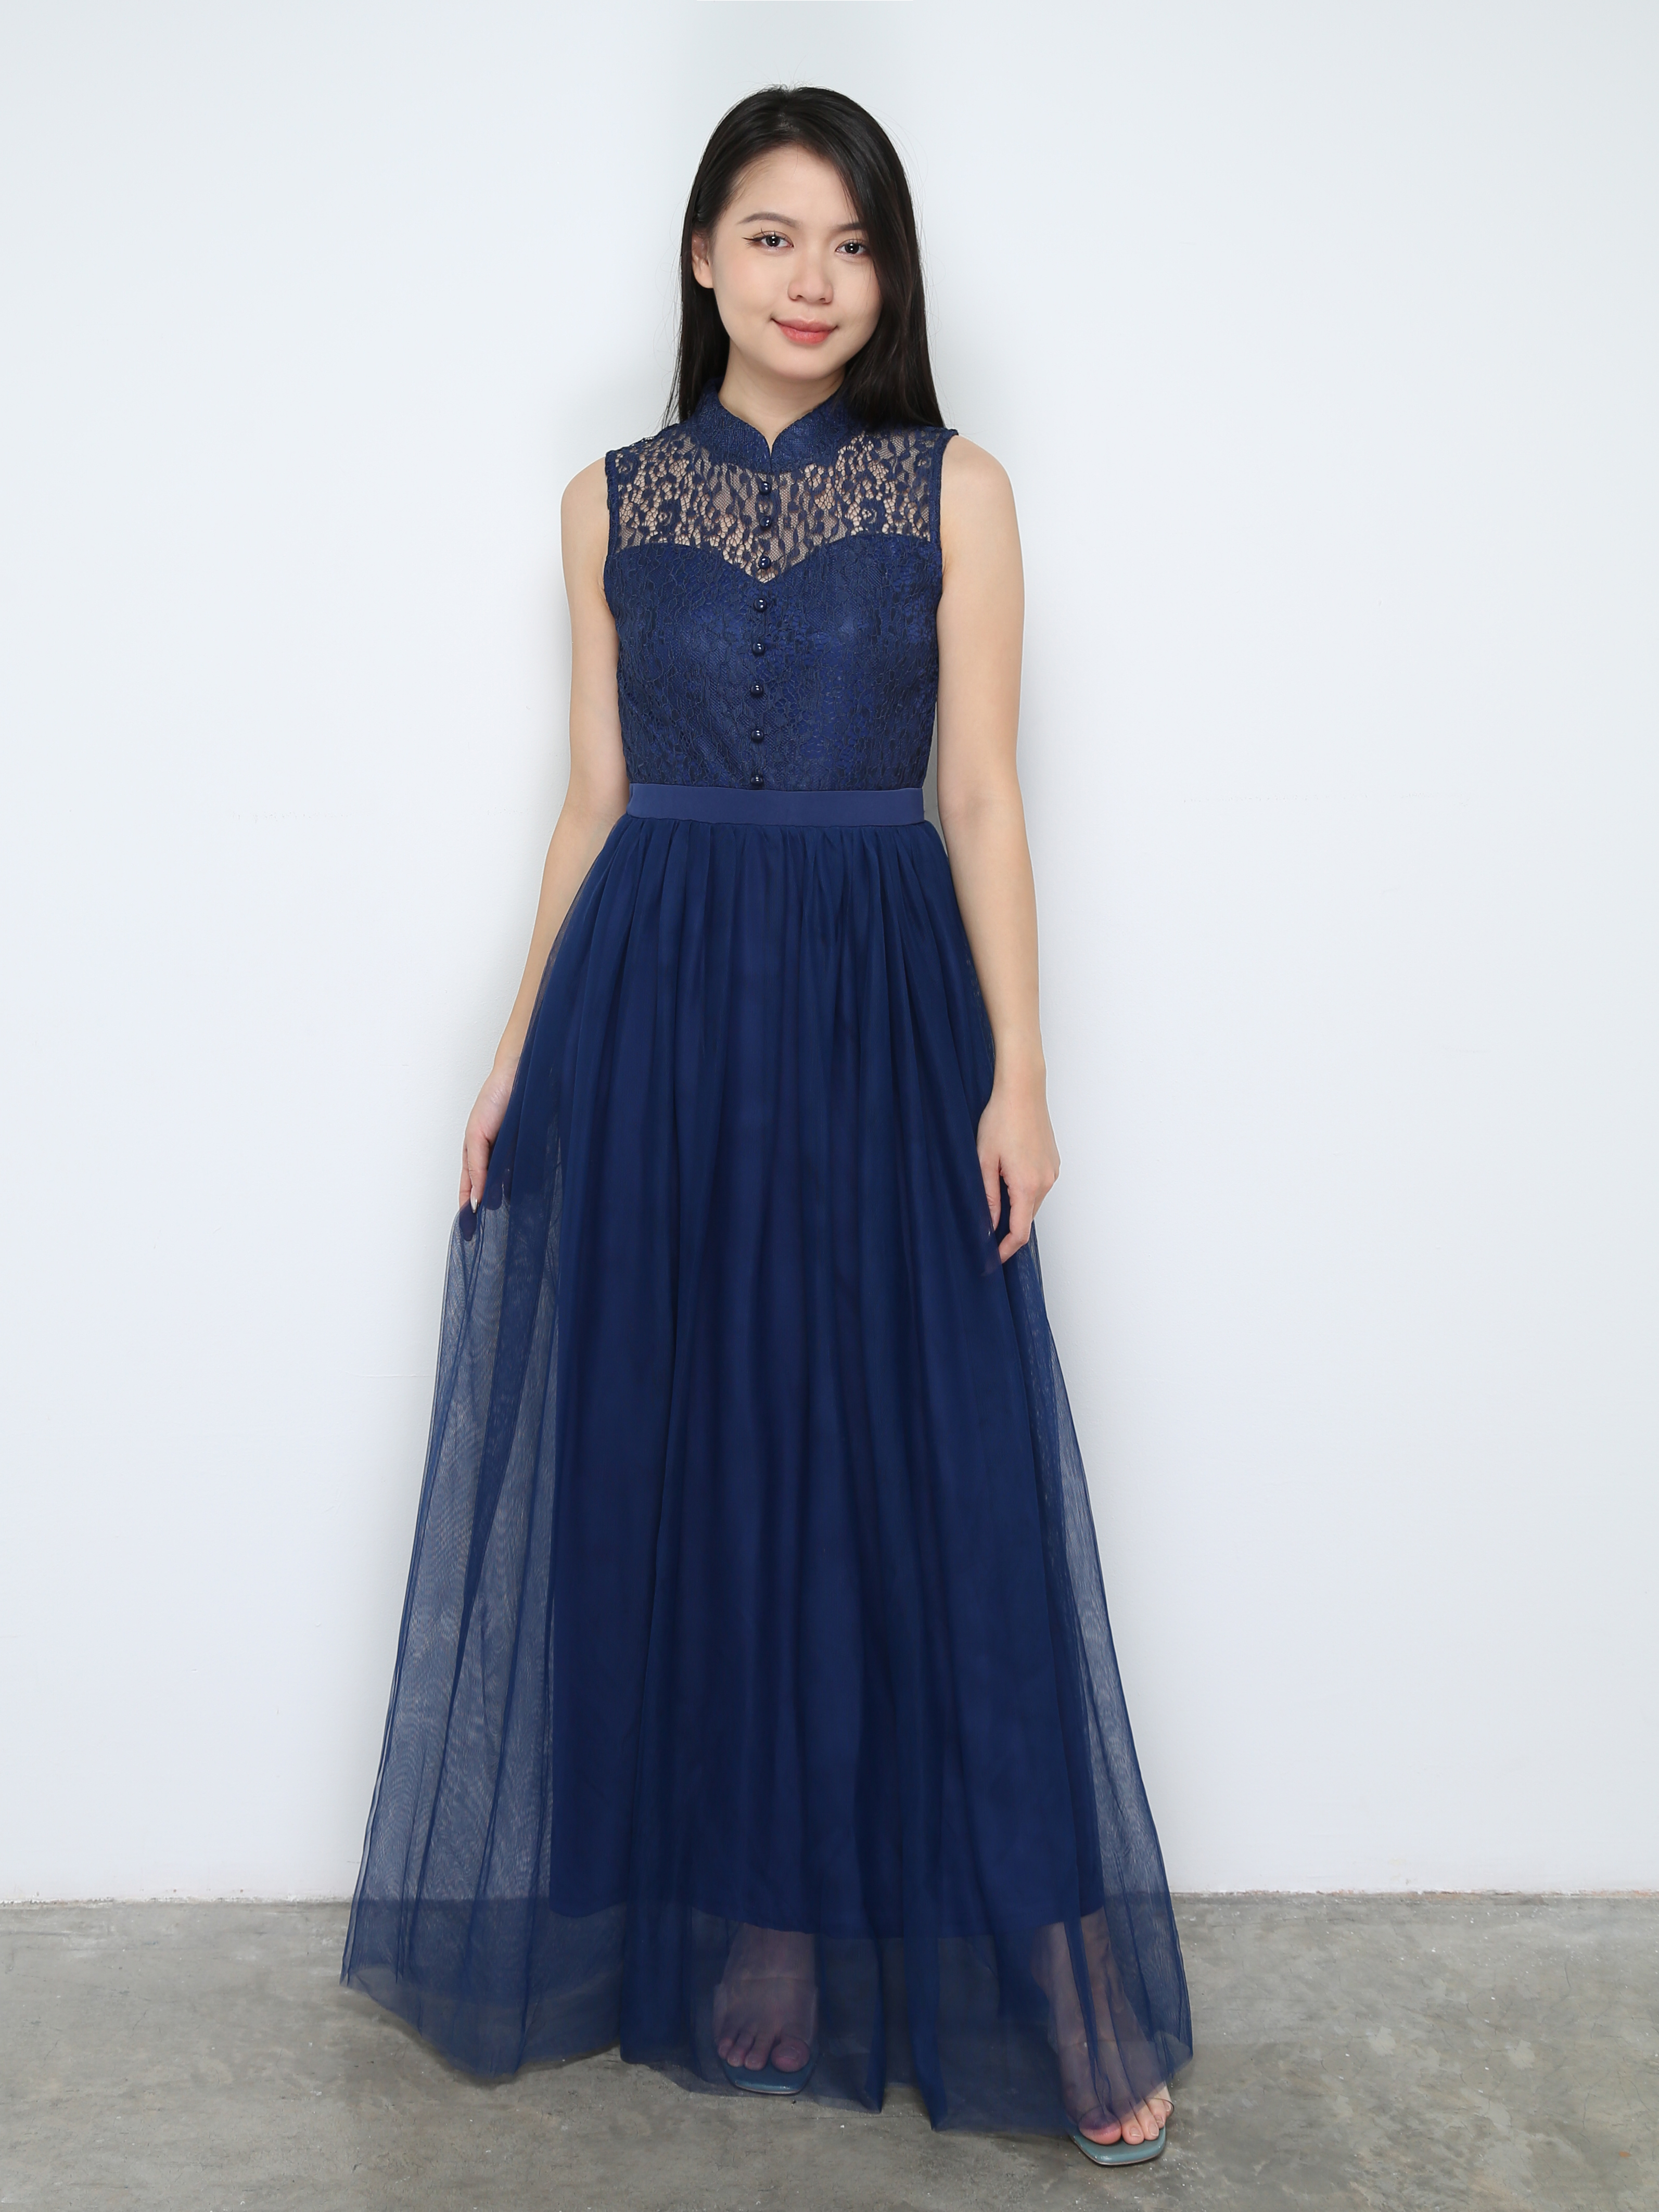 Elegant Sleeveless With Lace Dress 31334